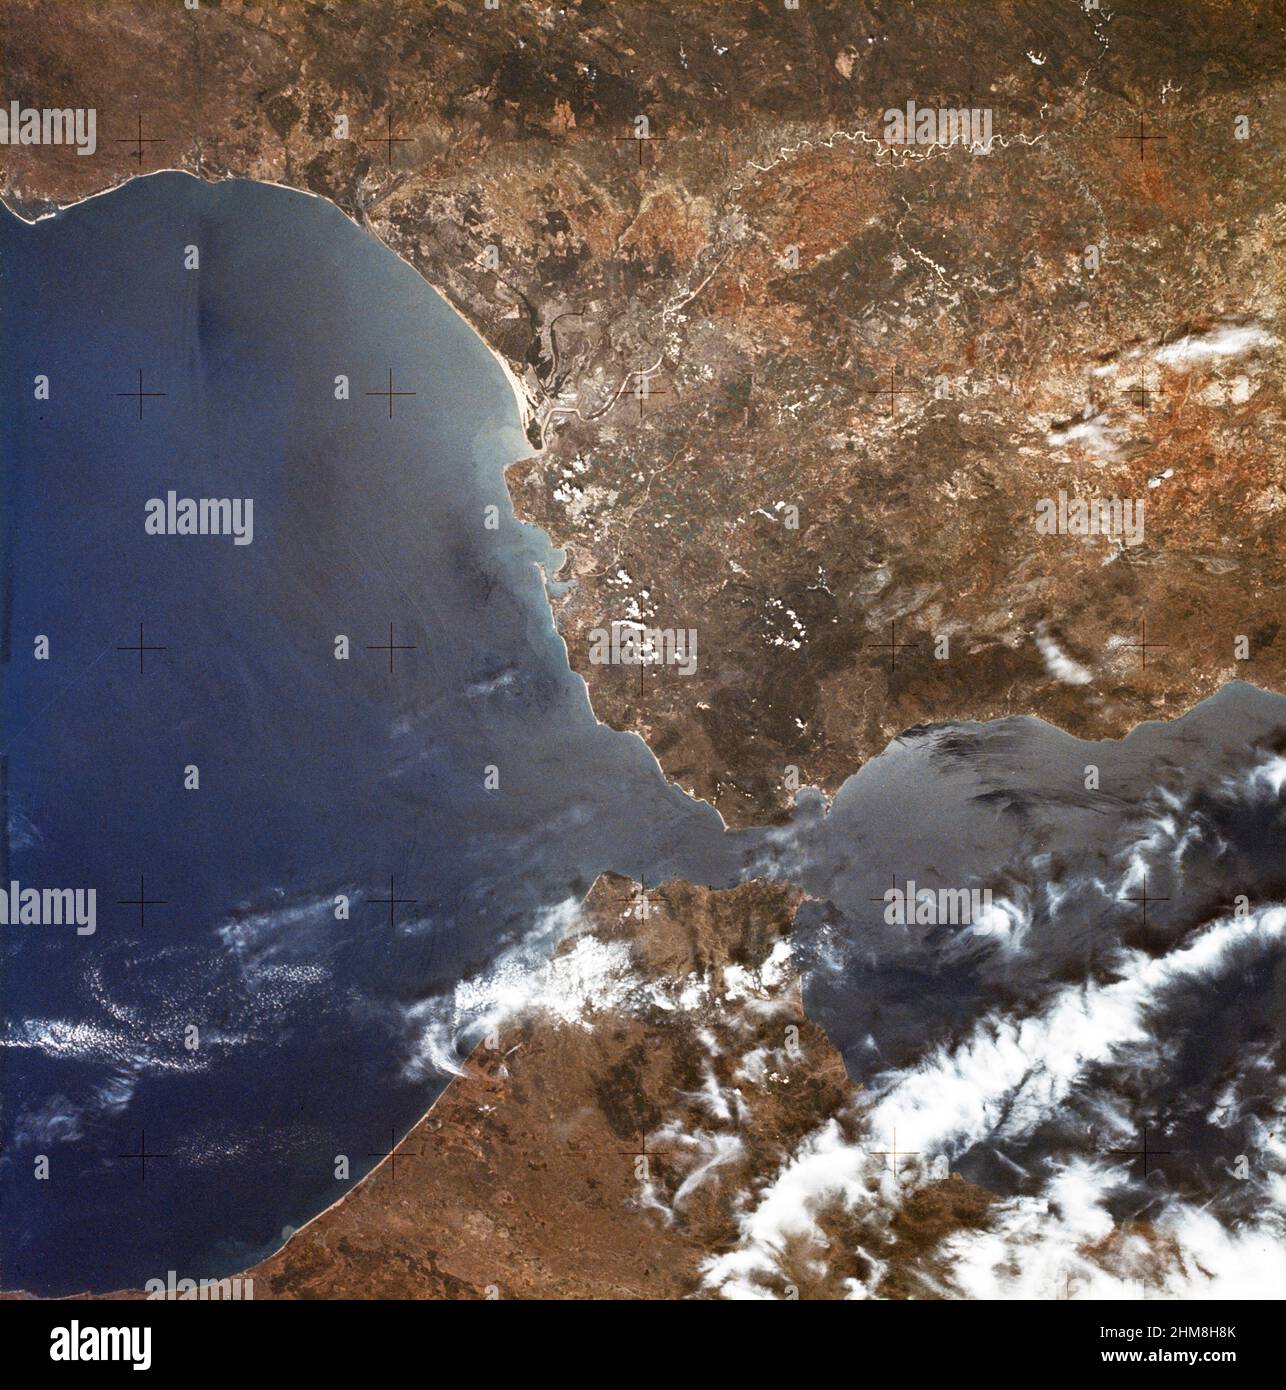 (22. Juni 1973) --- Tor zum Atlantik, seit der Antike ist die Straße von Gibraltar (36,5N, 4,5W) auch die Grenze zwischen Afrika und Europa. In Spanien im Norden ist das dunkle Küstengebiet das Delta des Guadalquivir-Flusses und die Stadt Sevilla. Der kleine Landstrich auf der Nordseite der Meerenge ist der eigentliche Felsen von Gibraltar. Auf der afrikanischen Seite weht von Marokko und Algerien aus eine Wolkenfront, die sich von der Küste her schneidet, nach Europa Stockfoto